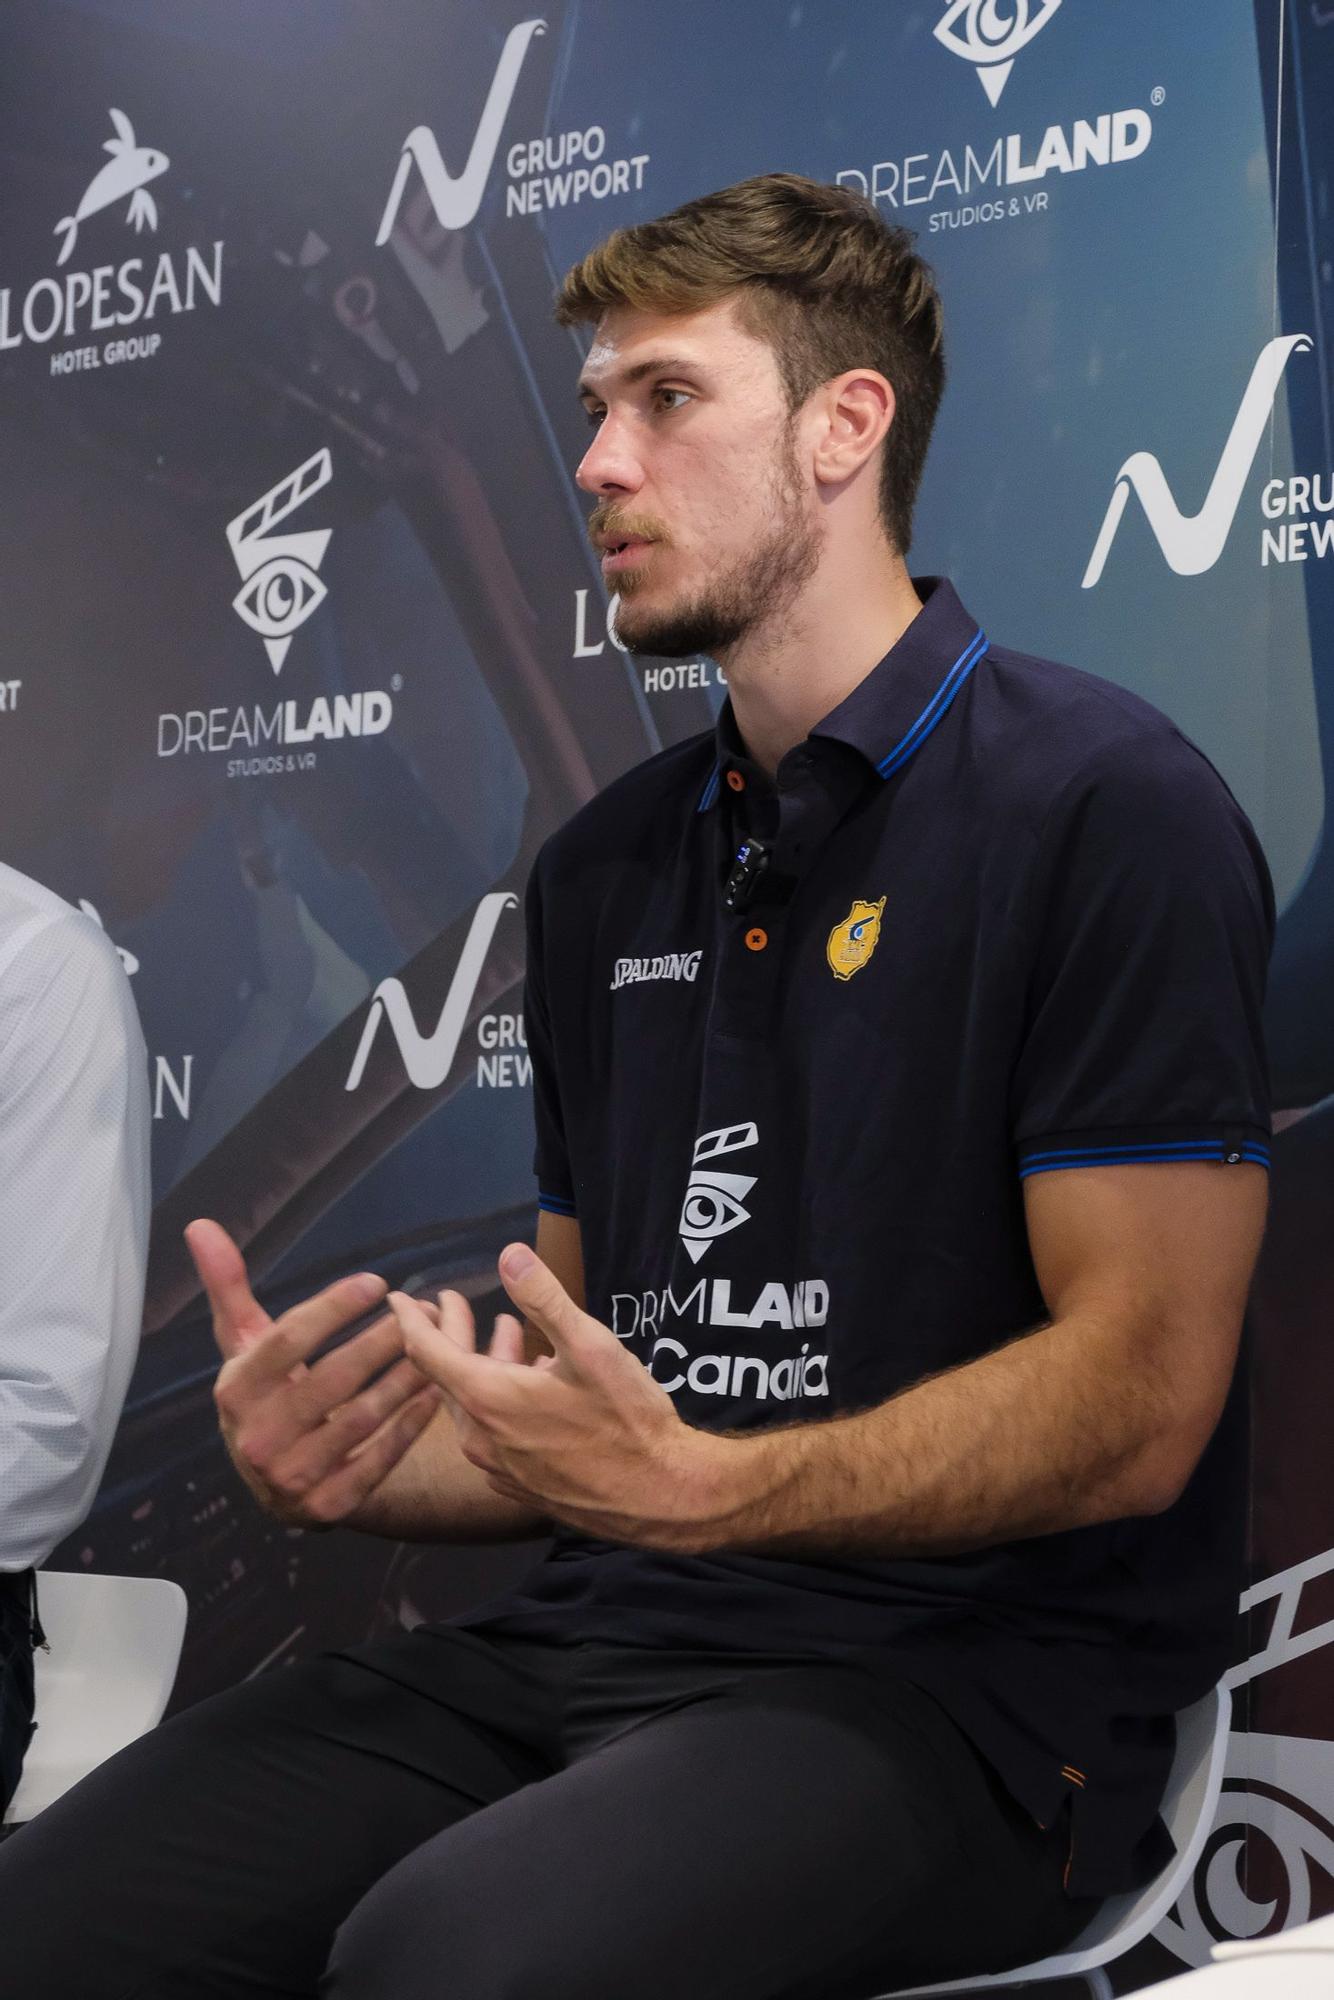 Presentación de Ethan Happ, nuevo jugador del Dreamland Gran Canaria